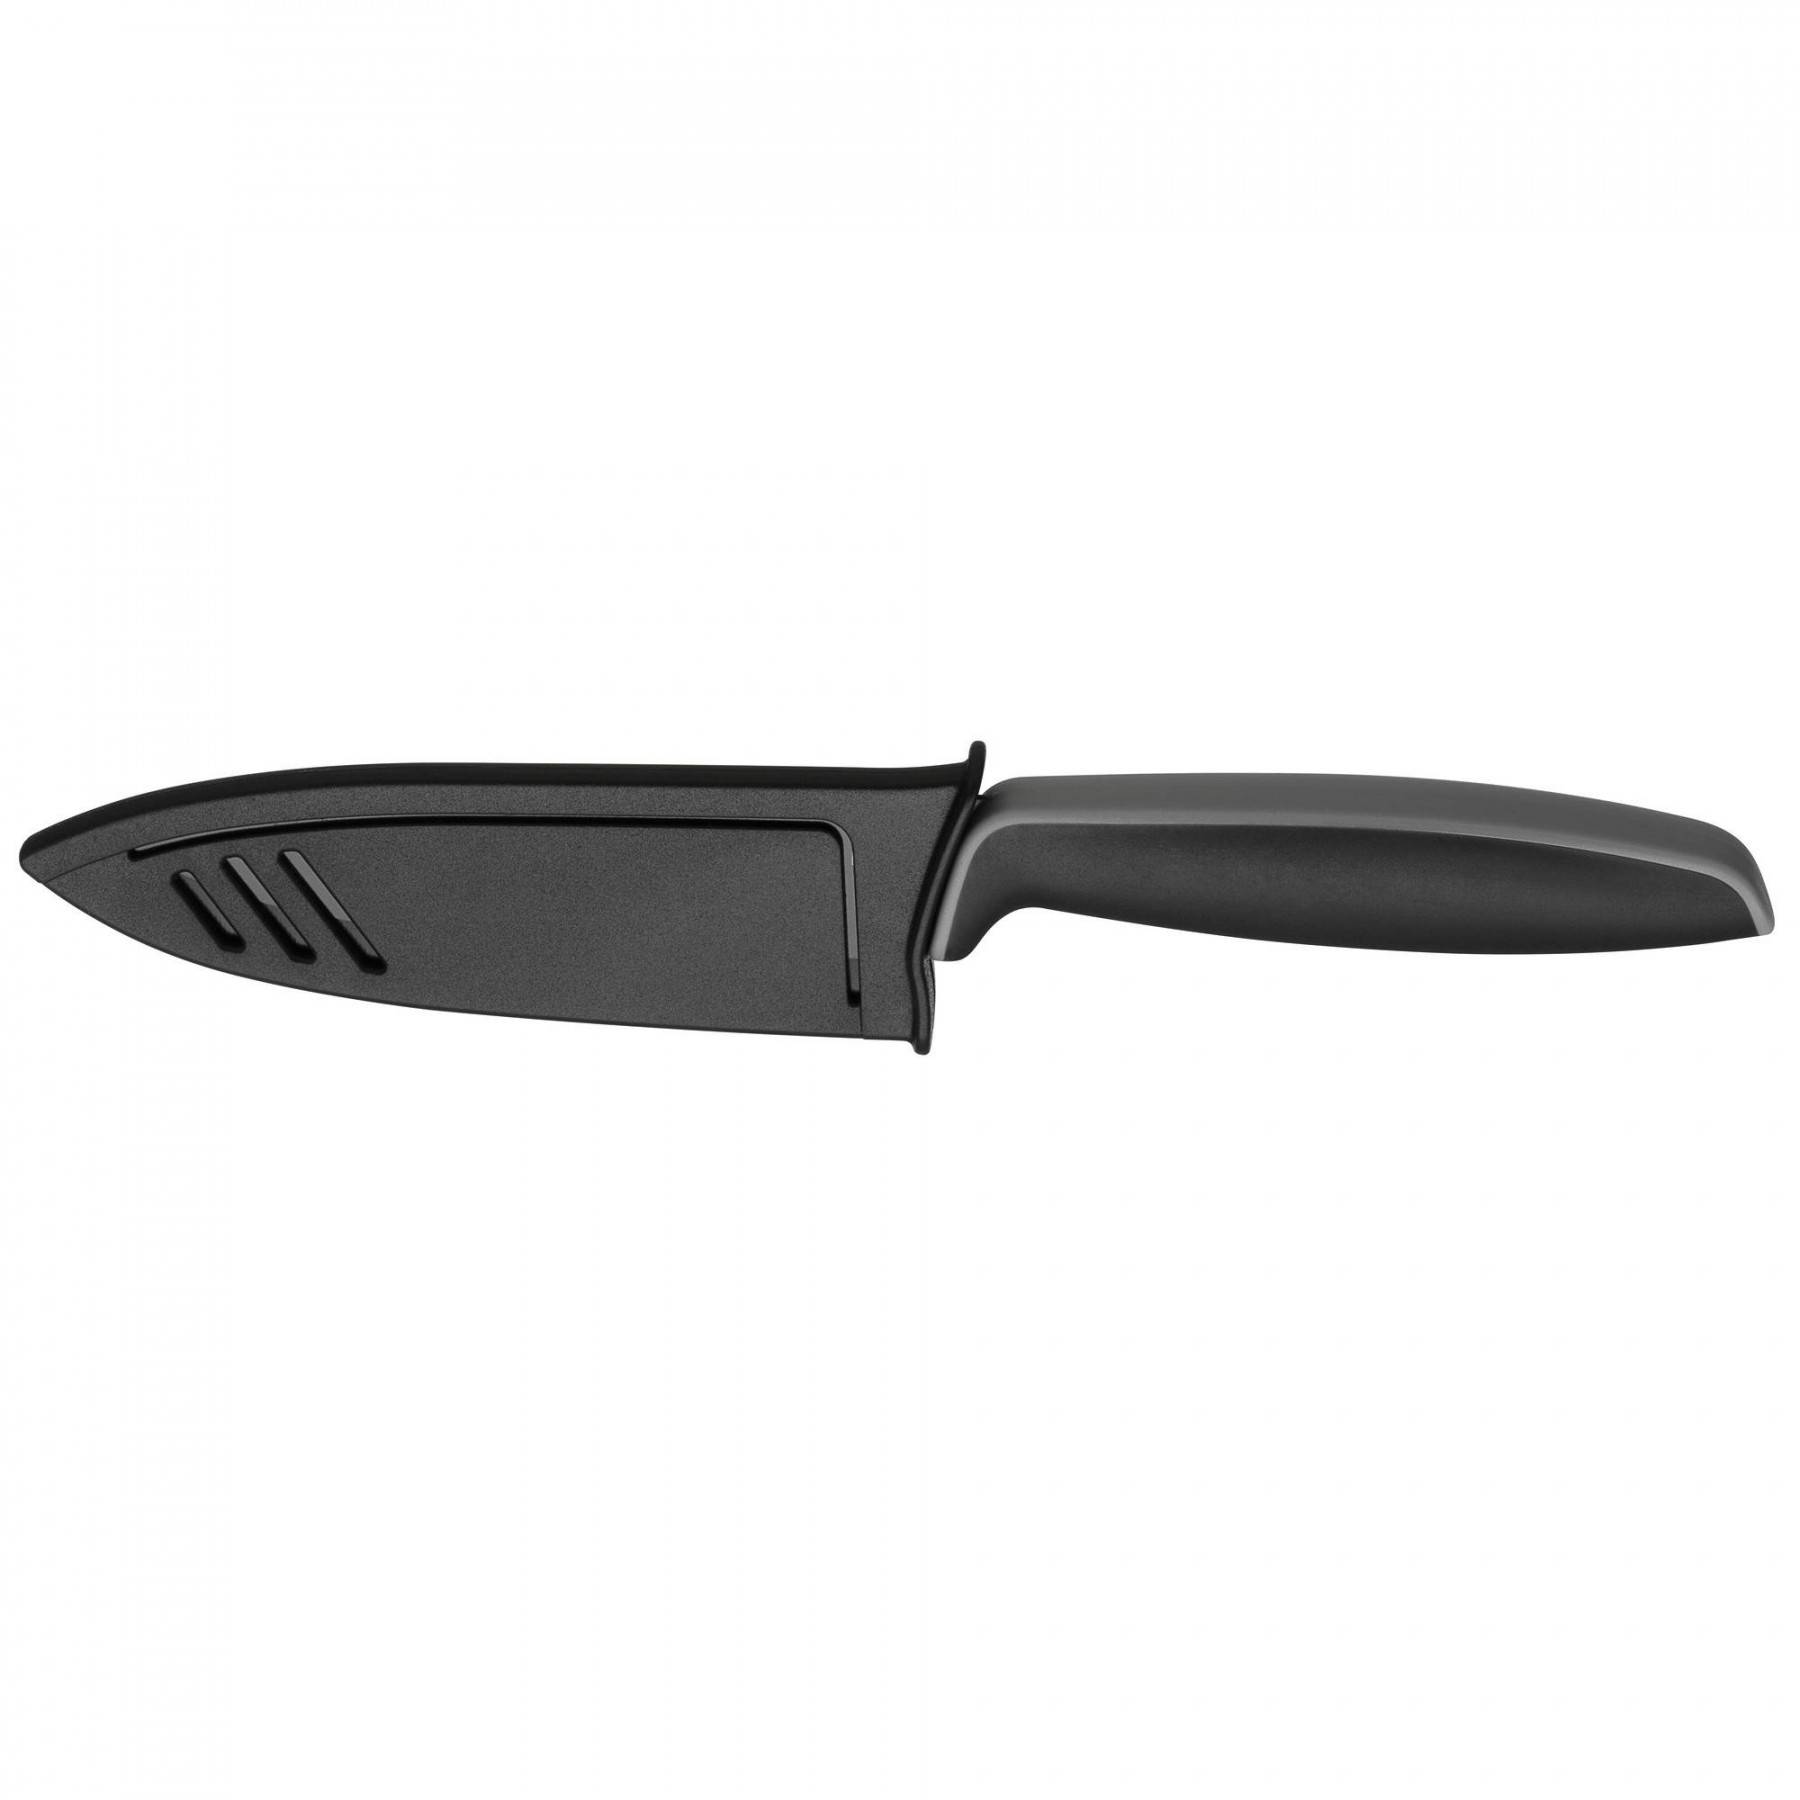 Touch Набор ножей 2 шт. /13 см и 9 см/ черный 																													 (1879086100) WMF - spb.v-b.ru